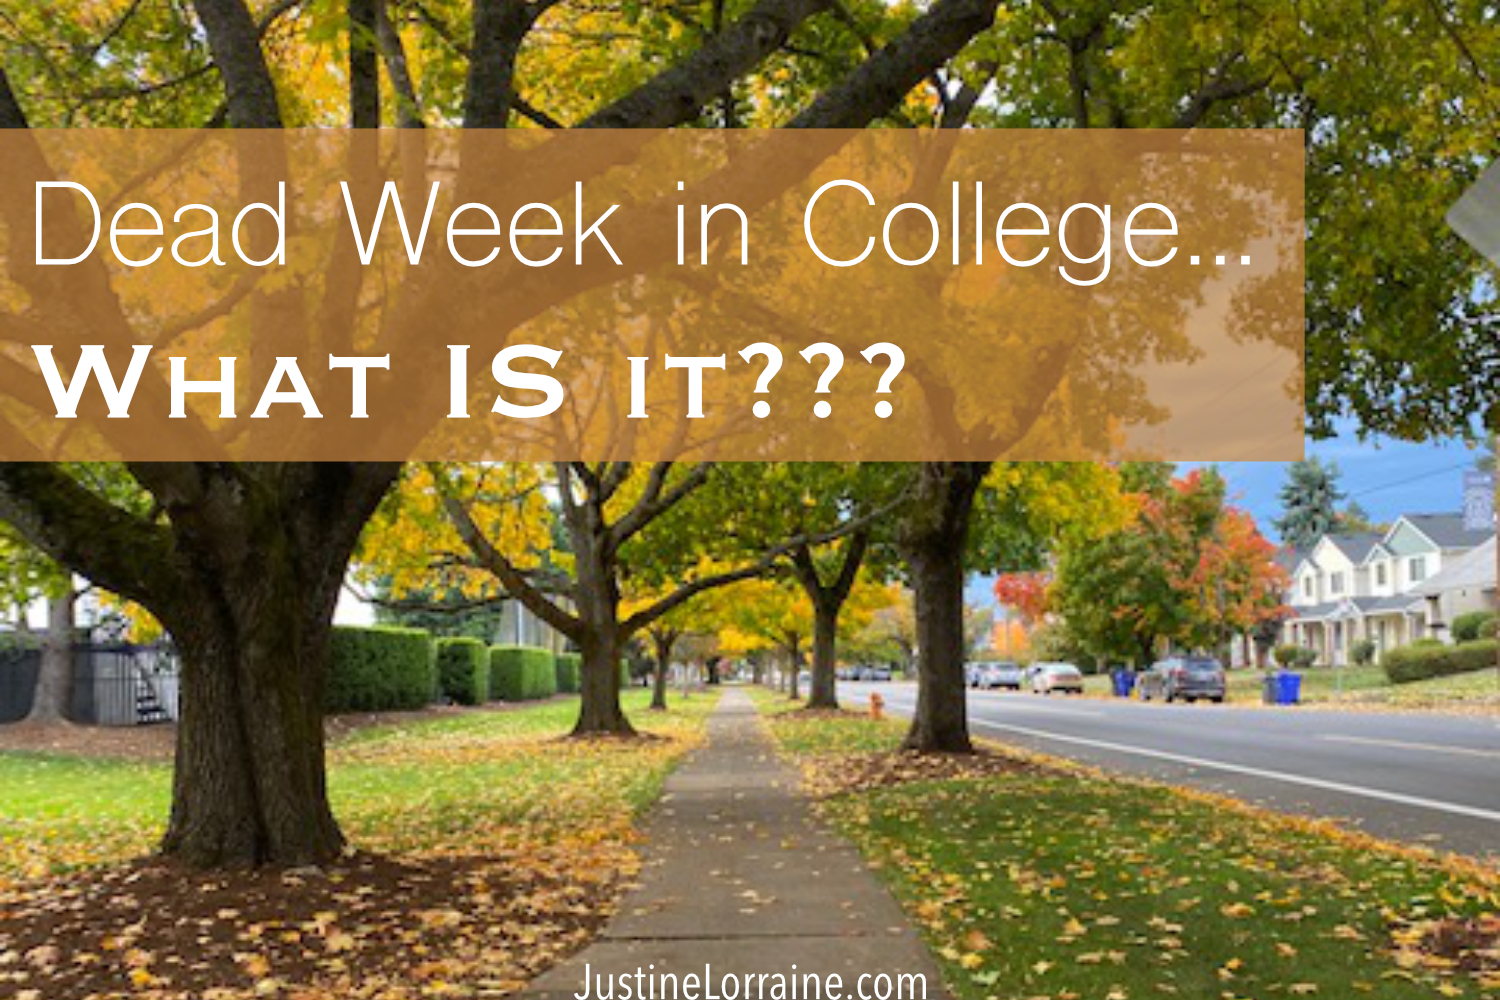 Dead Week in College, What is it?